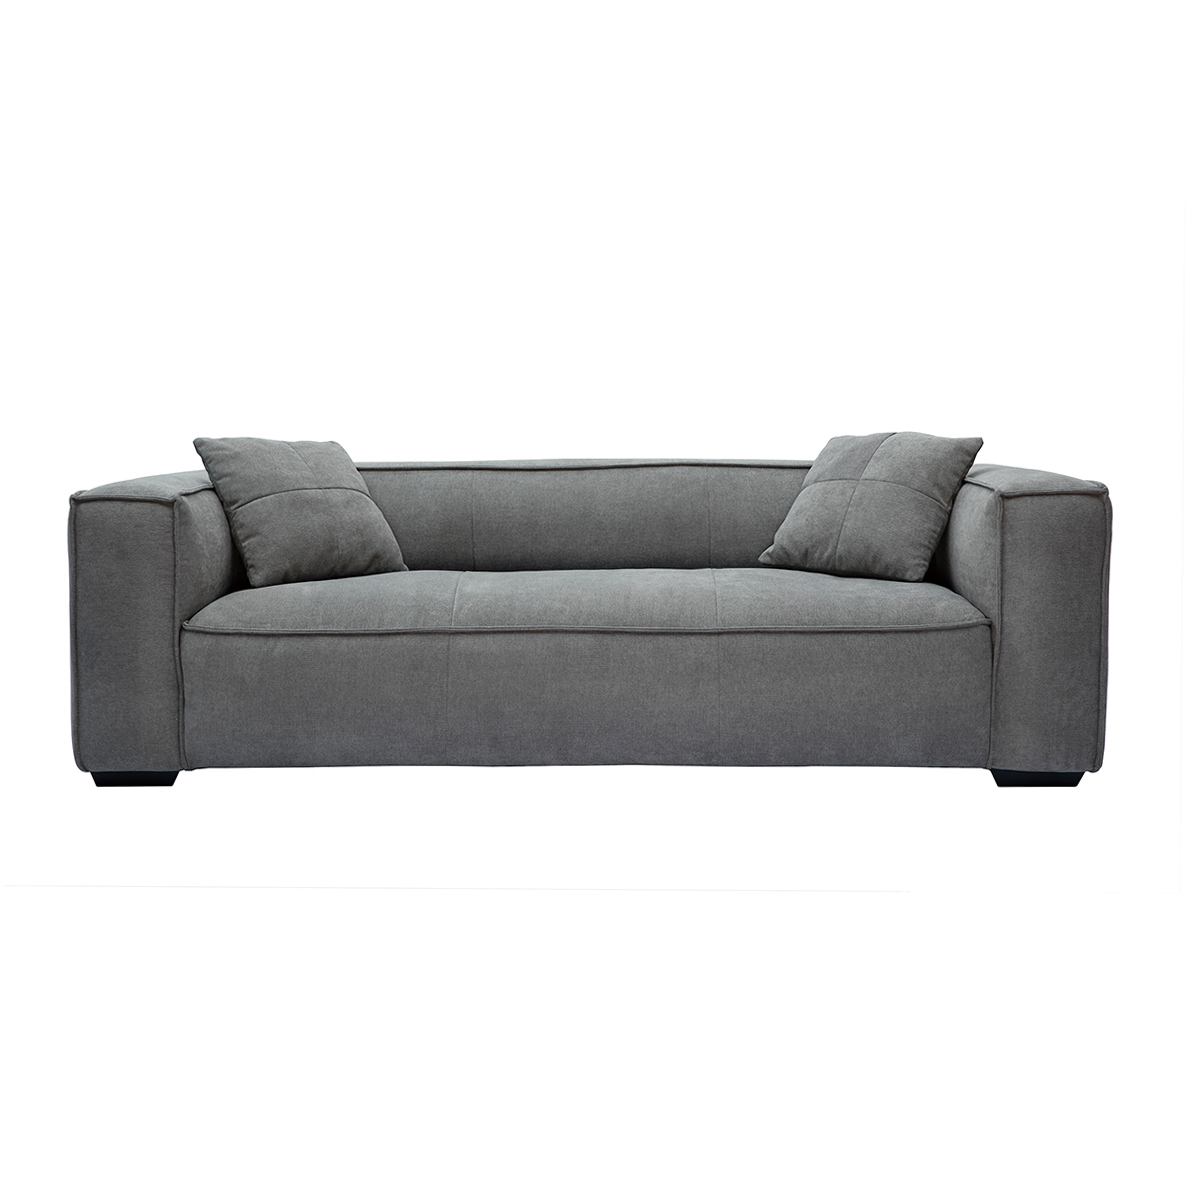 Canapé design 3 places en tissu effet velours gris et bois noir COBAIN vue1